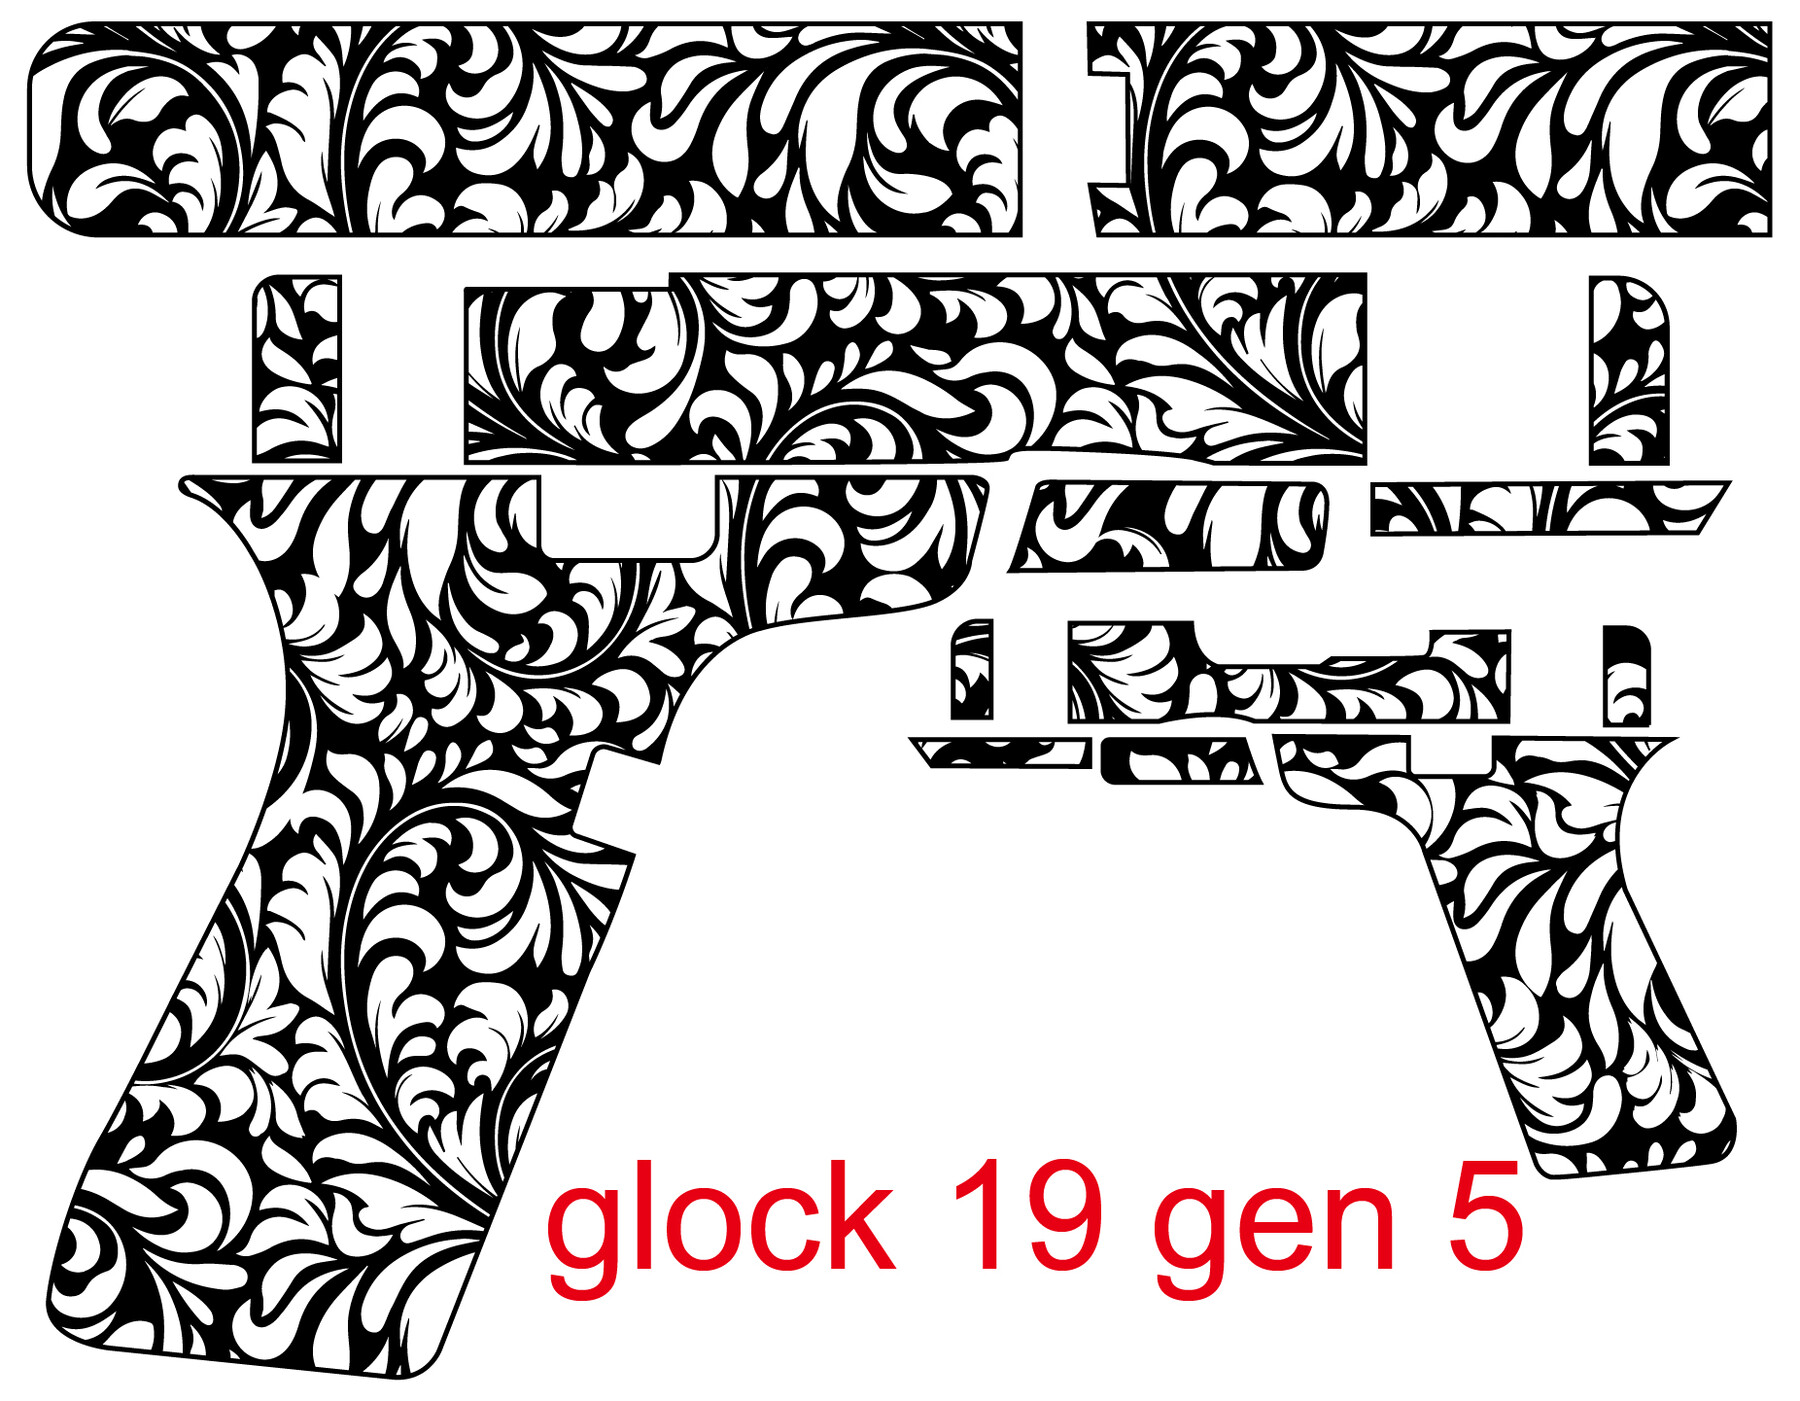 artstation-glock-19-gen-5-floral-patterns-vector-engraving-design